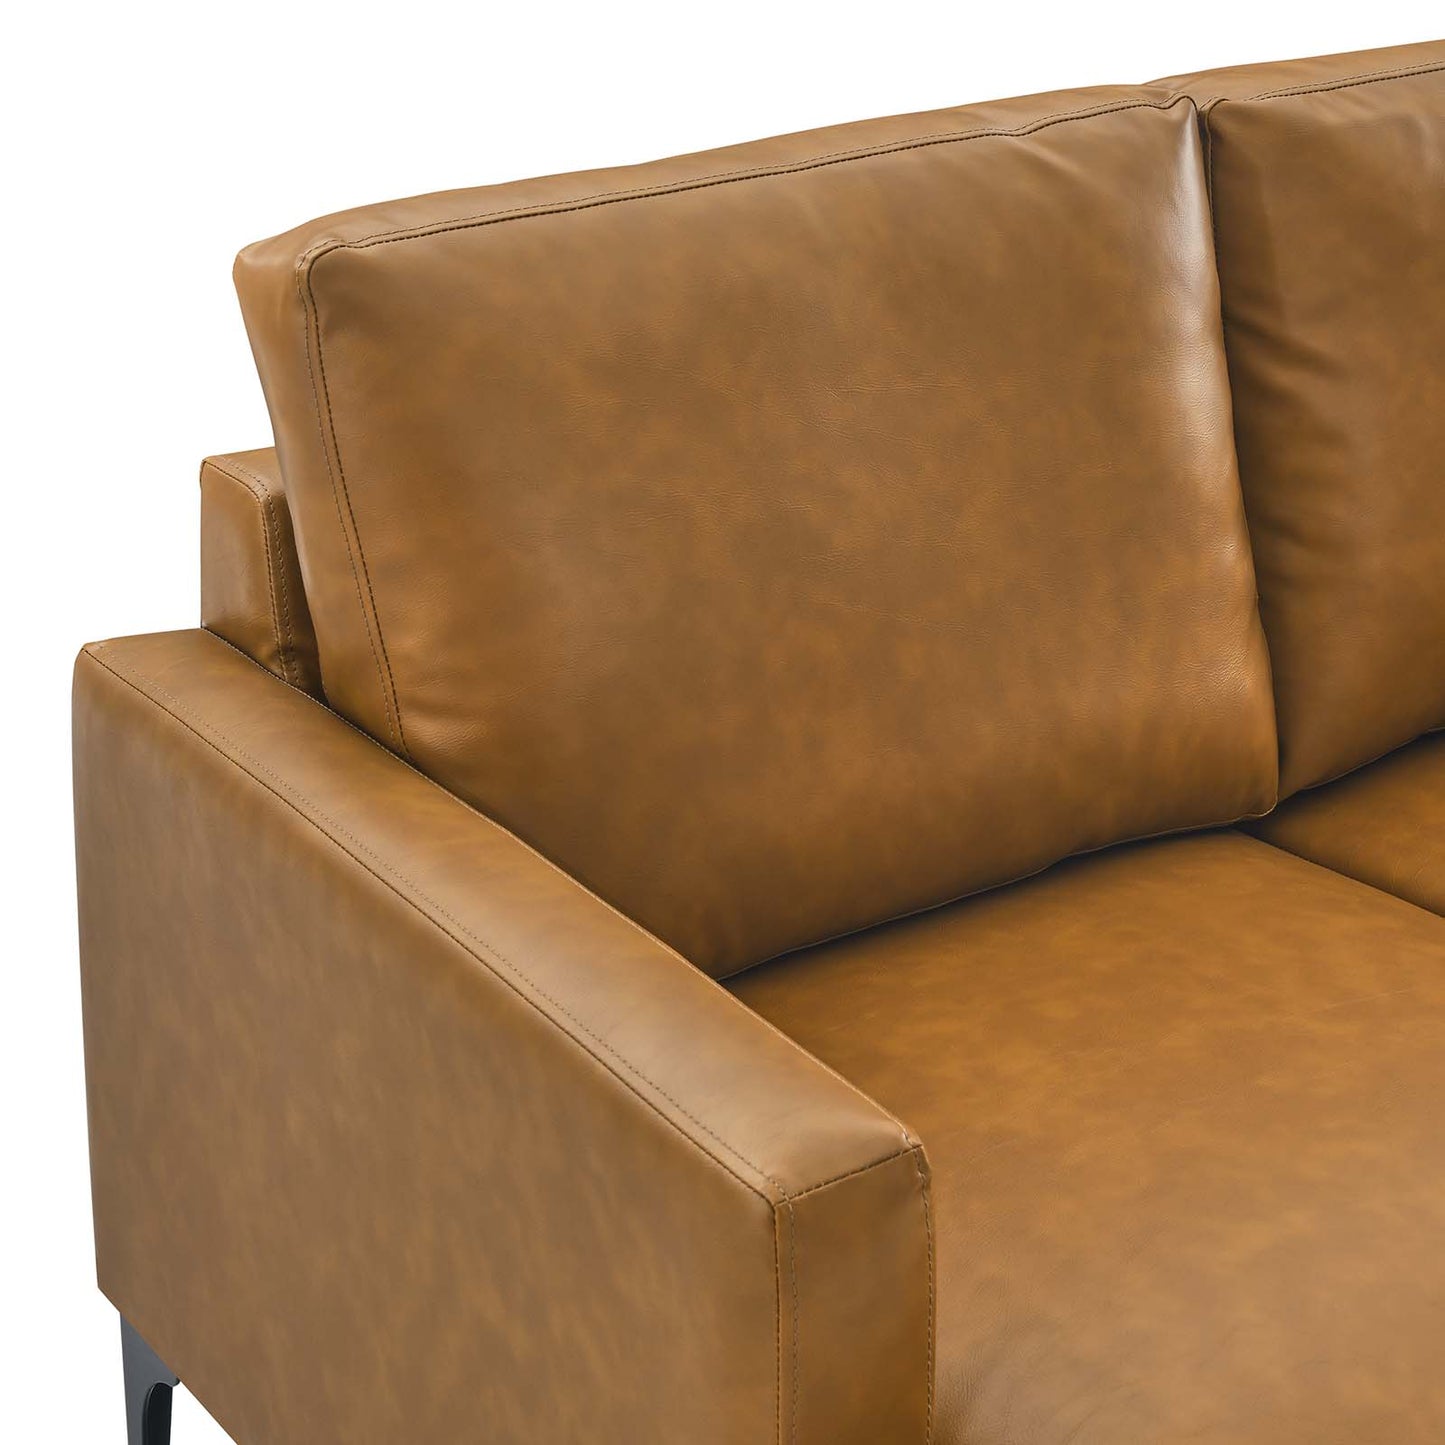 Evermore Vegan Leather Sofa Tan EEI-6049-TAN